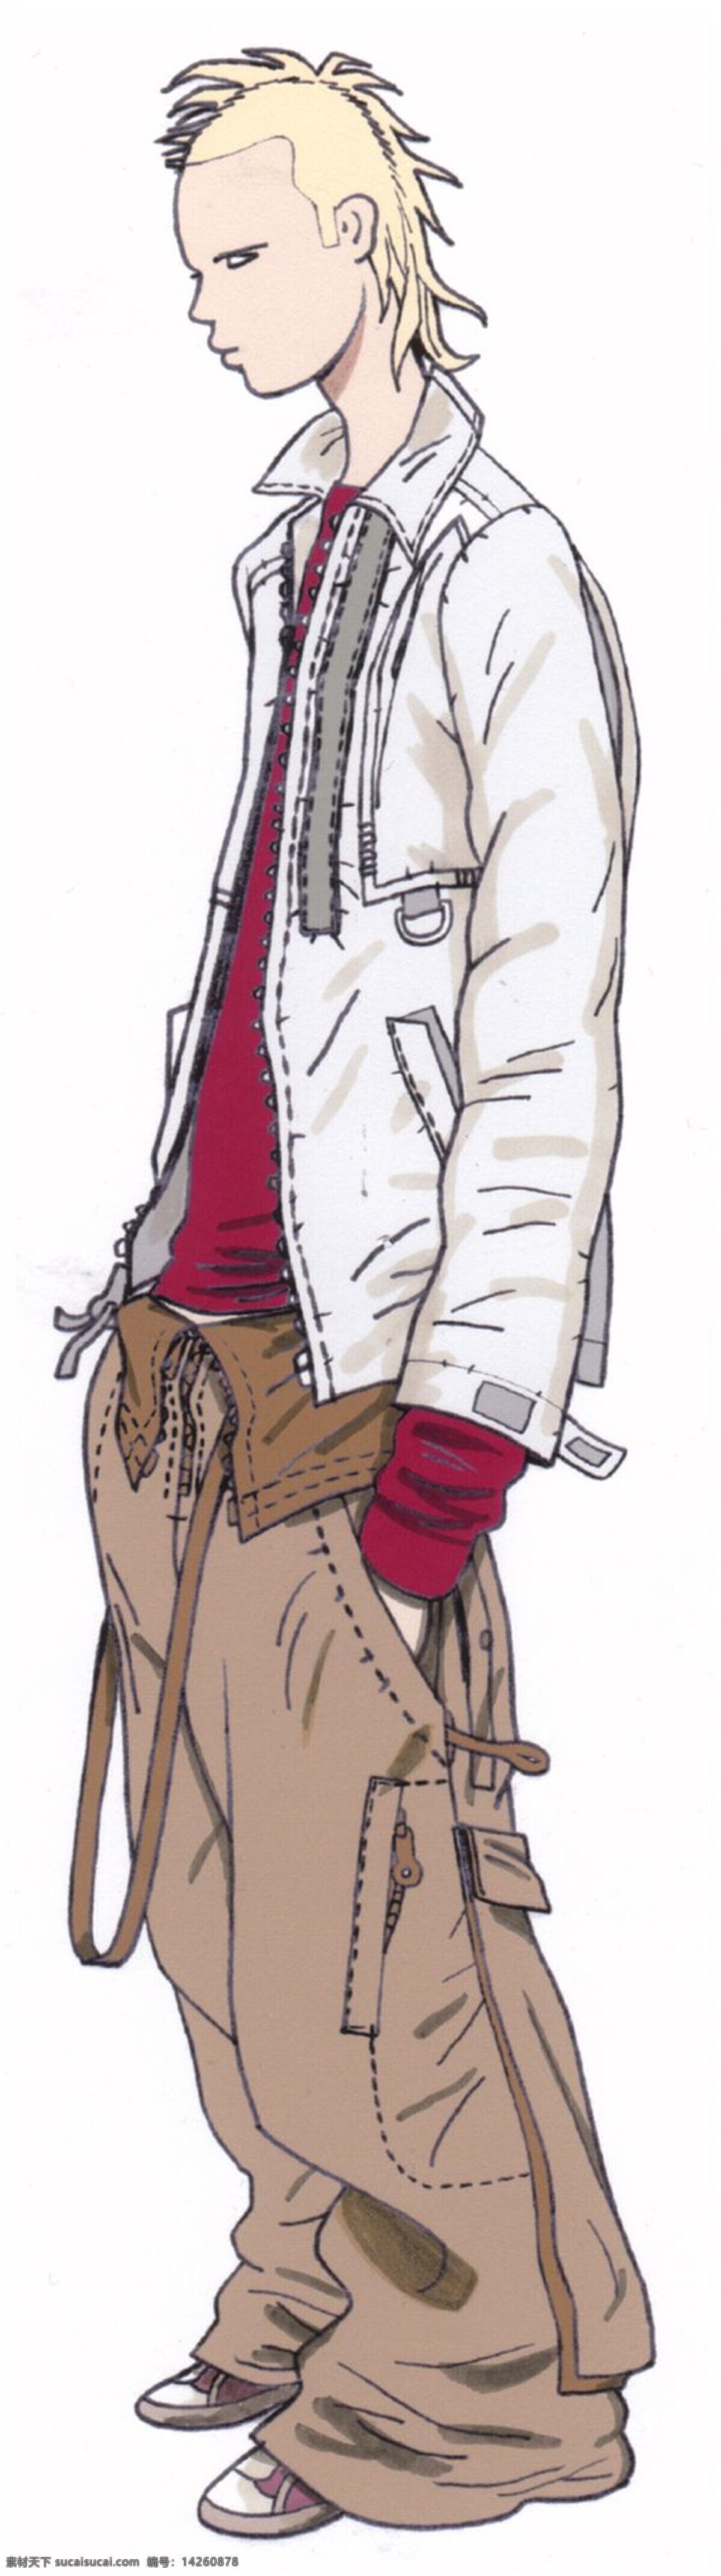 个性服装 男装 个性 浅色 外套 效果图 浅色外套 红色内搭 褐色裤子